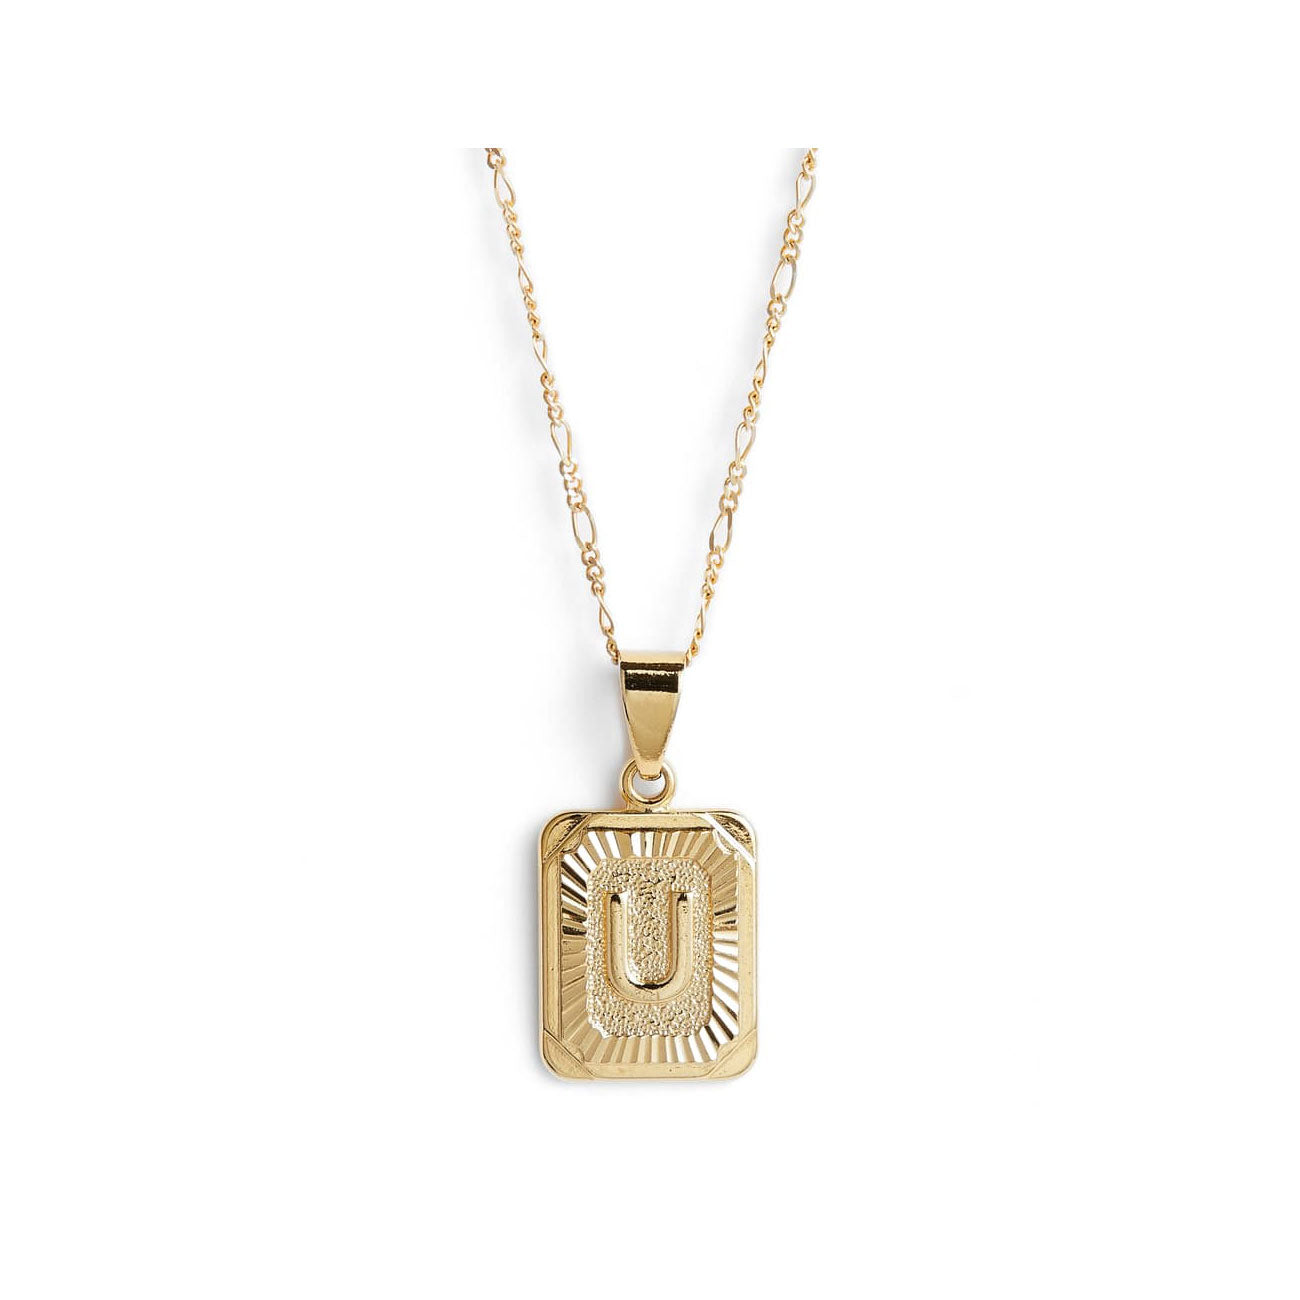 Zodiac Charm Necklace in 14K Gold Filled - LoveGem Studio